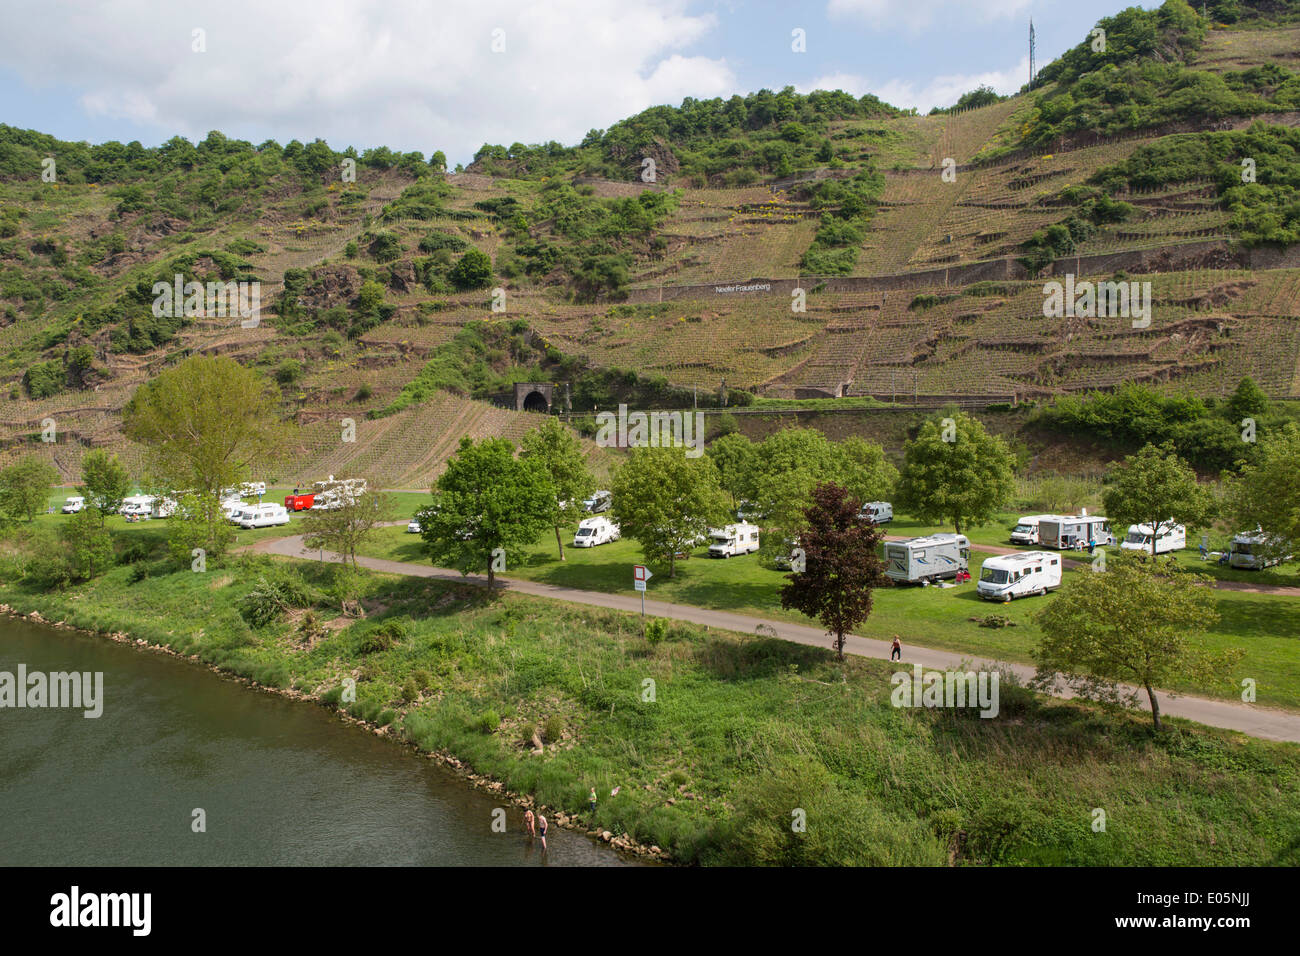 Les campeurs dans un camping au bord de la Moselle de vignes dans l'arrière-plan Banque D'Images